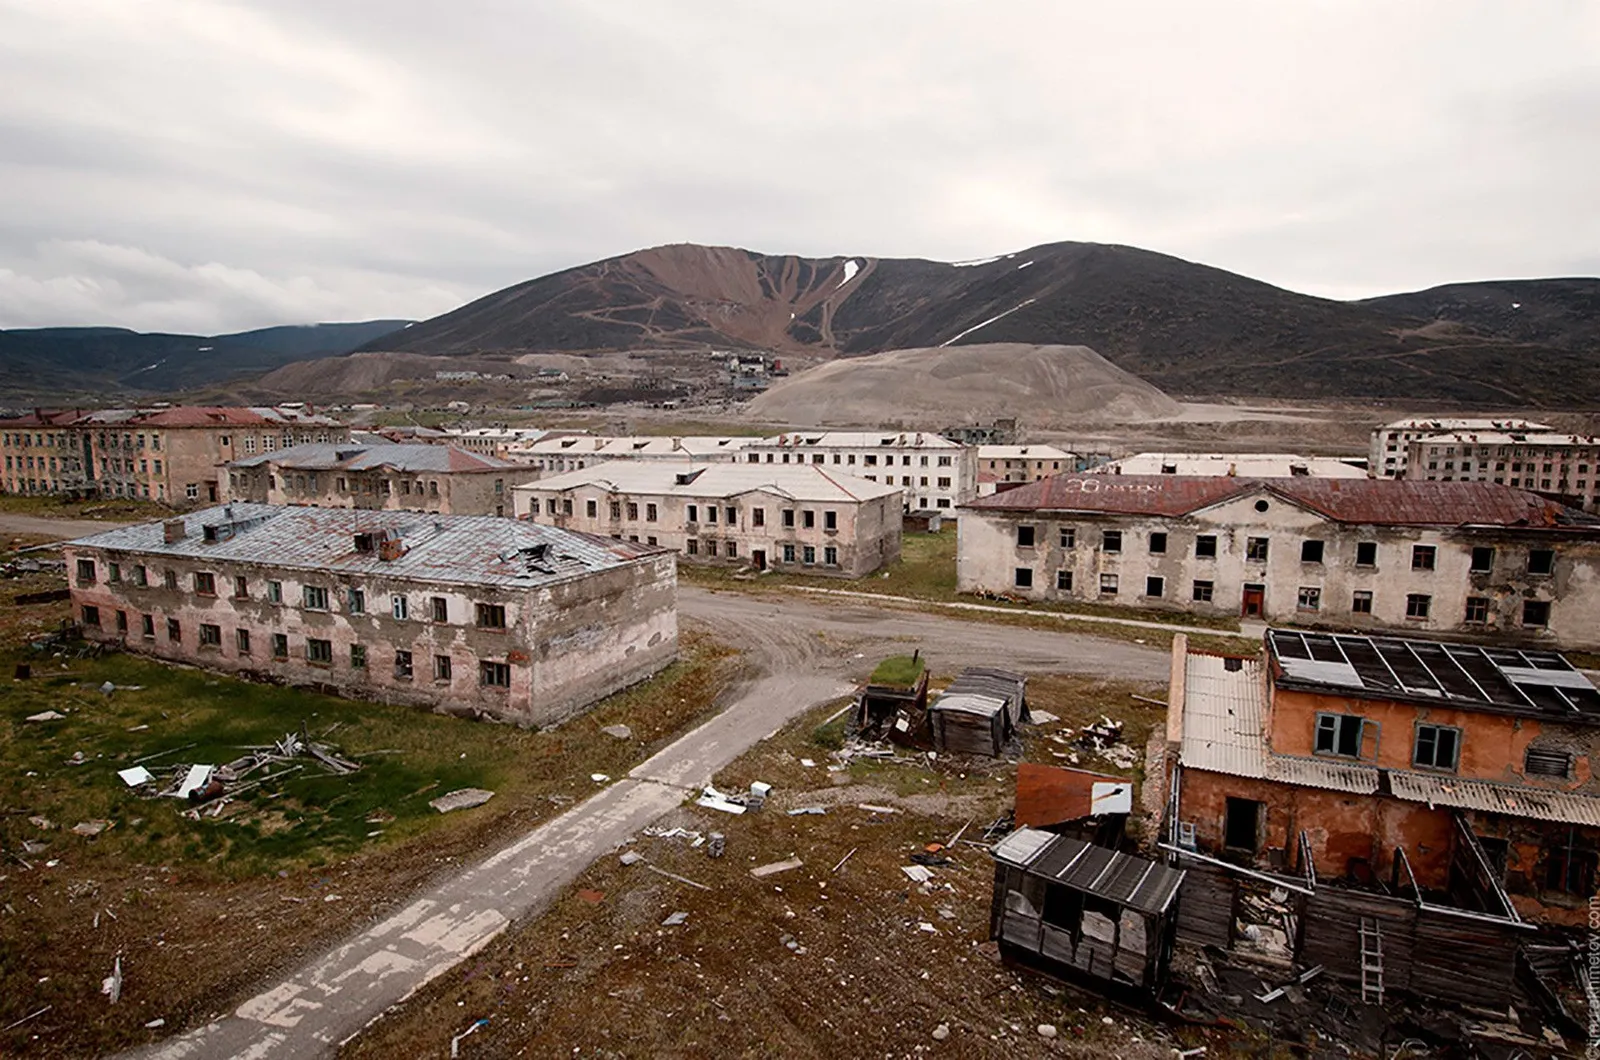 Ngeri, Intip Potret 8 Kota di Rusia yang Ditinggalkan Warganya